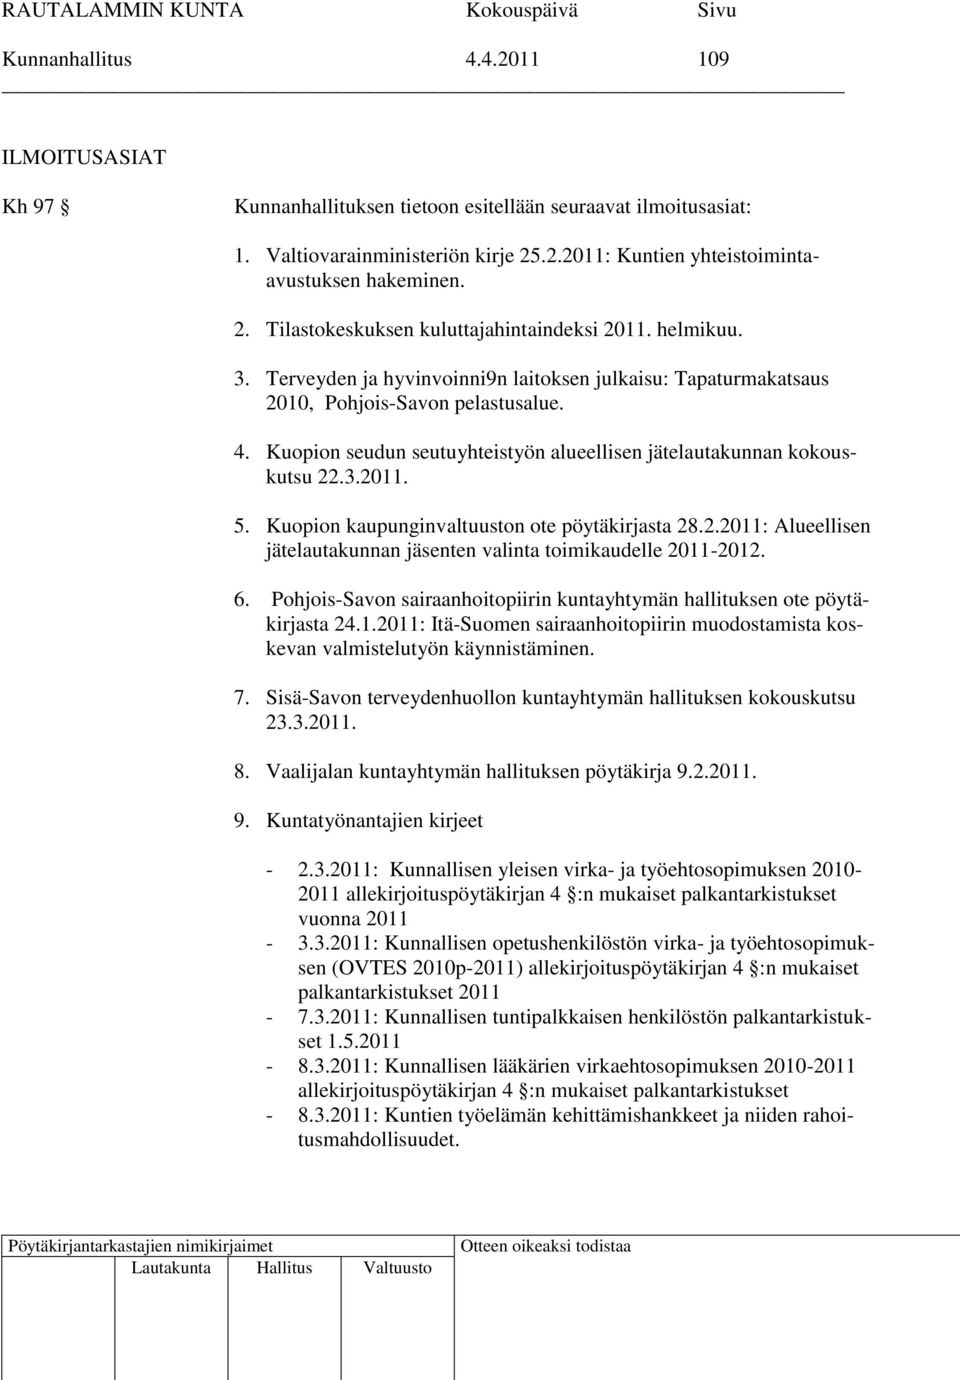 Kuopion kaupunginvaltuuston ote pöytäkirjasta 28.2.2011: Alueellisen jätelautakunnan jäsenten valinta toimikaudelle 2011-2012. 6.